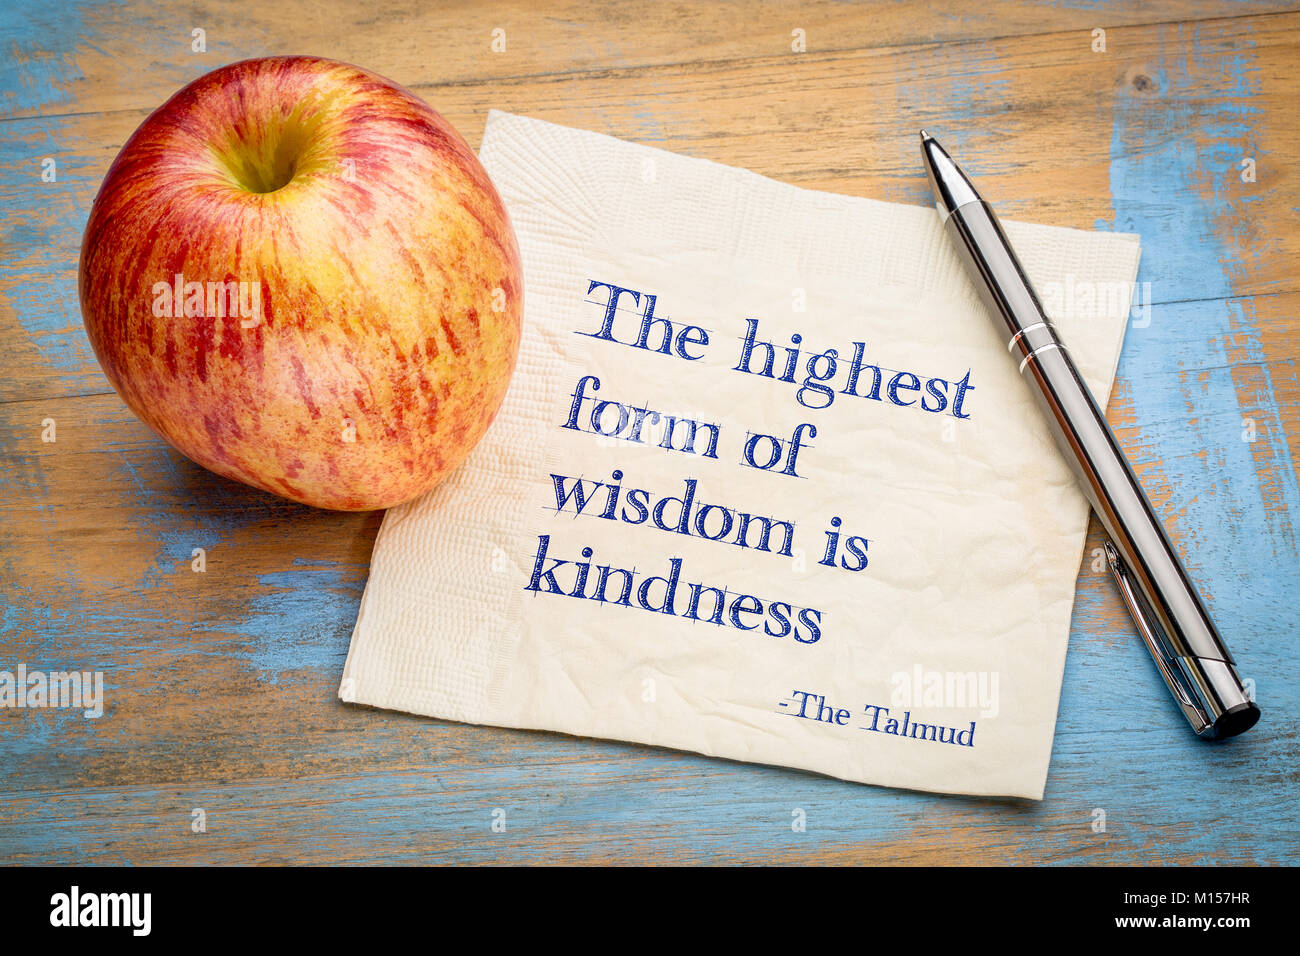 La più alta forma di saggezza è la gentilezza - scrittura su un tovagliolo con un fresco apple Foto Stock